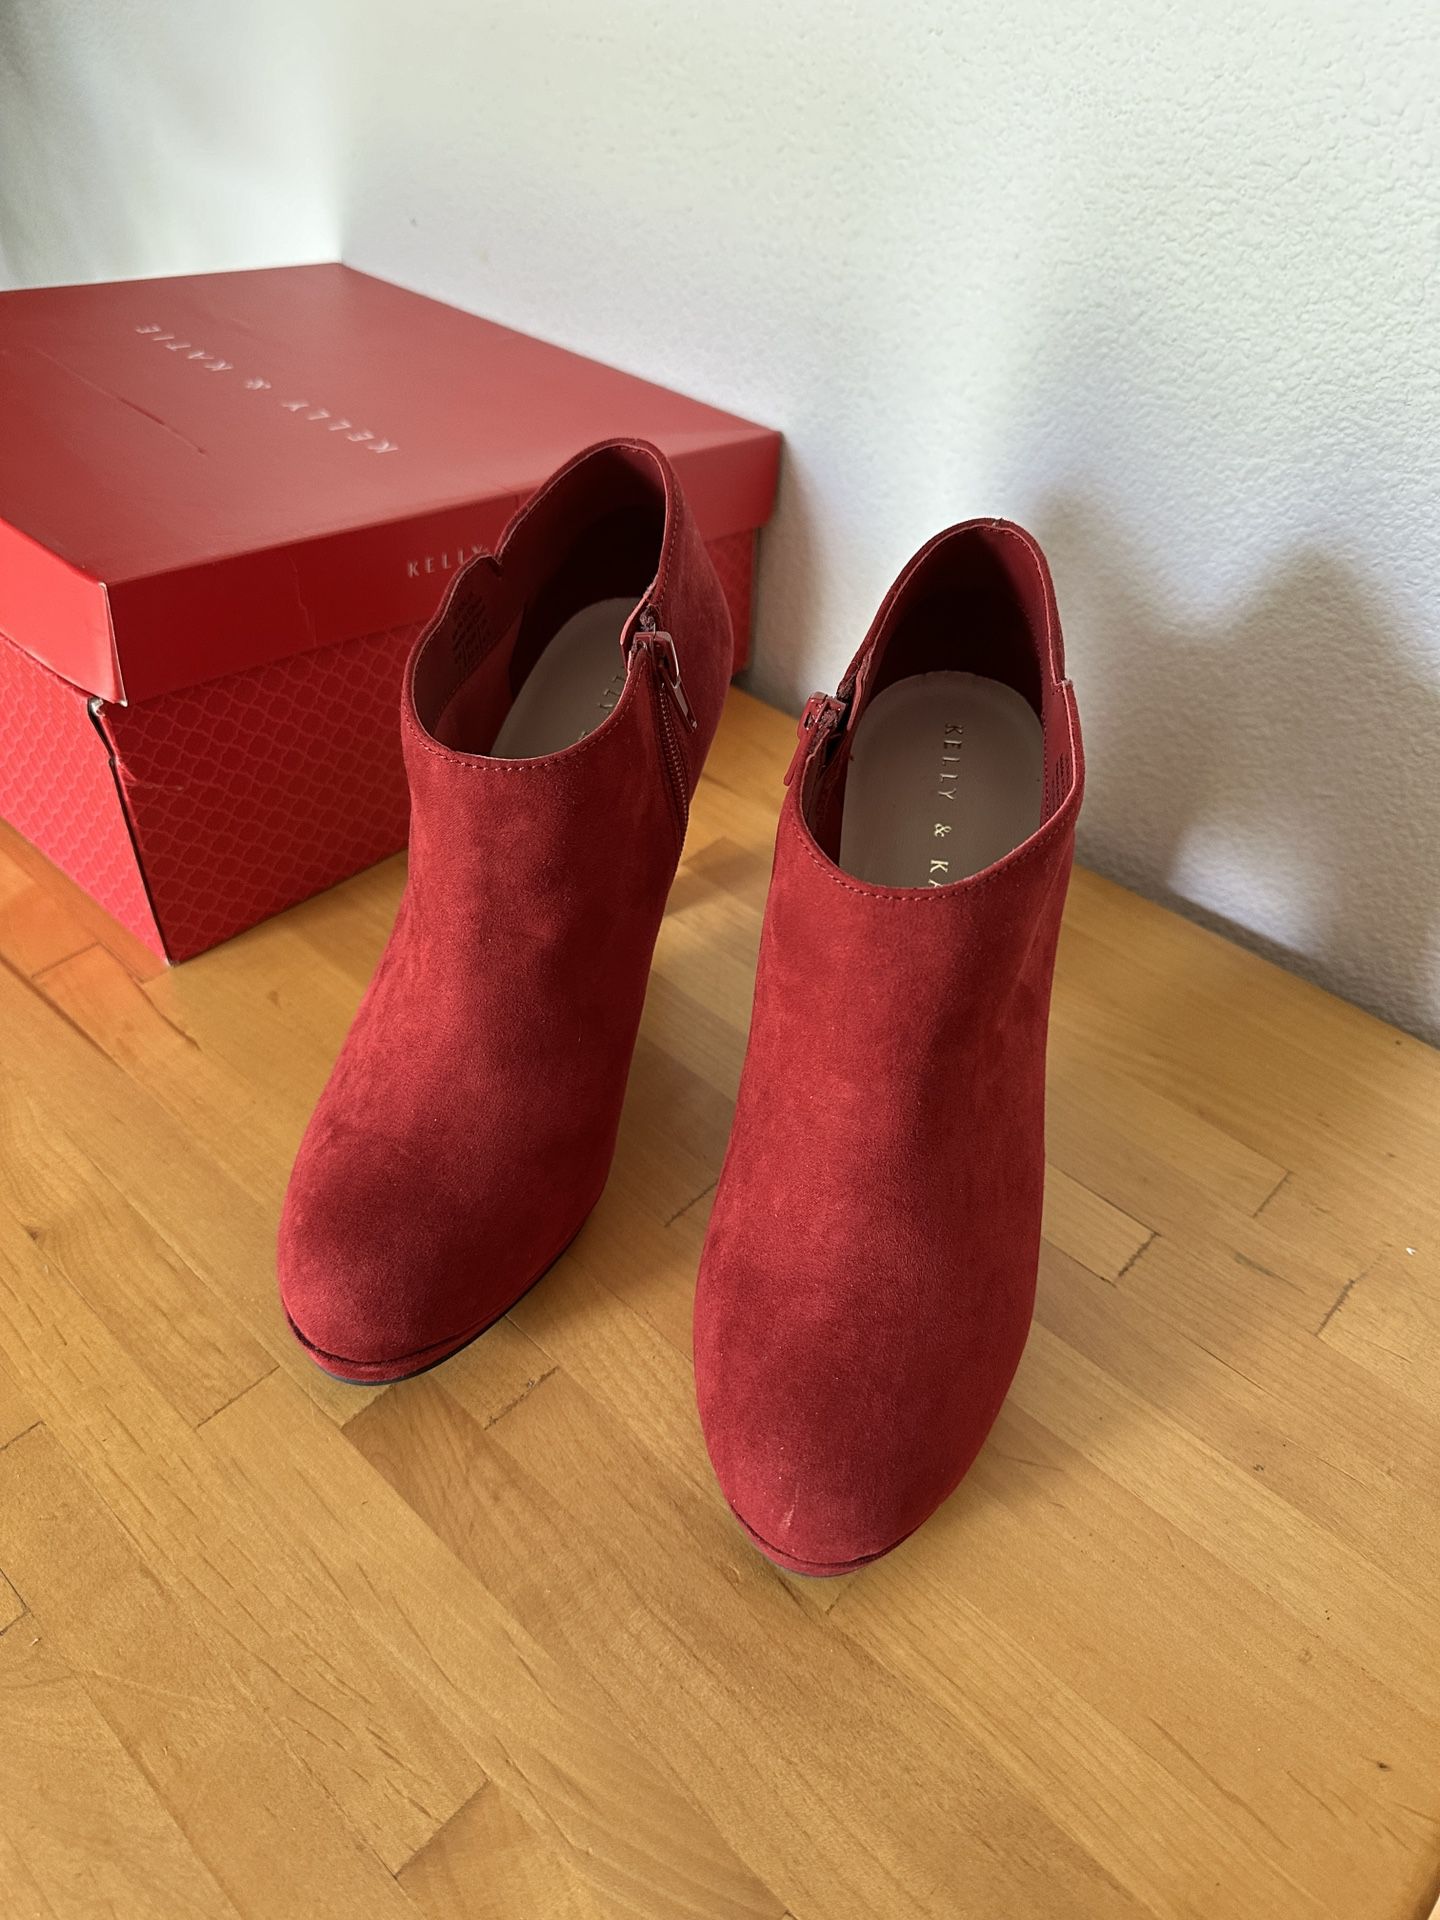 Red Suede Heels - Bootie Type - Size 7